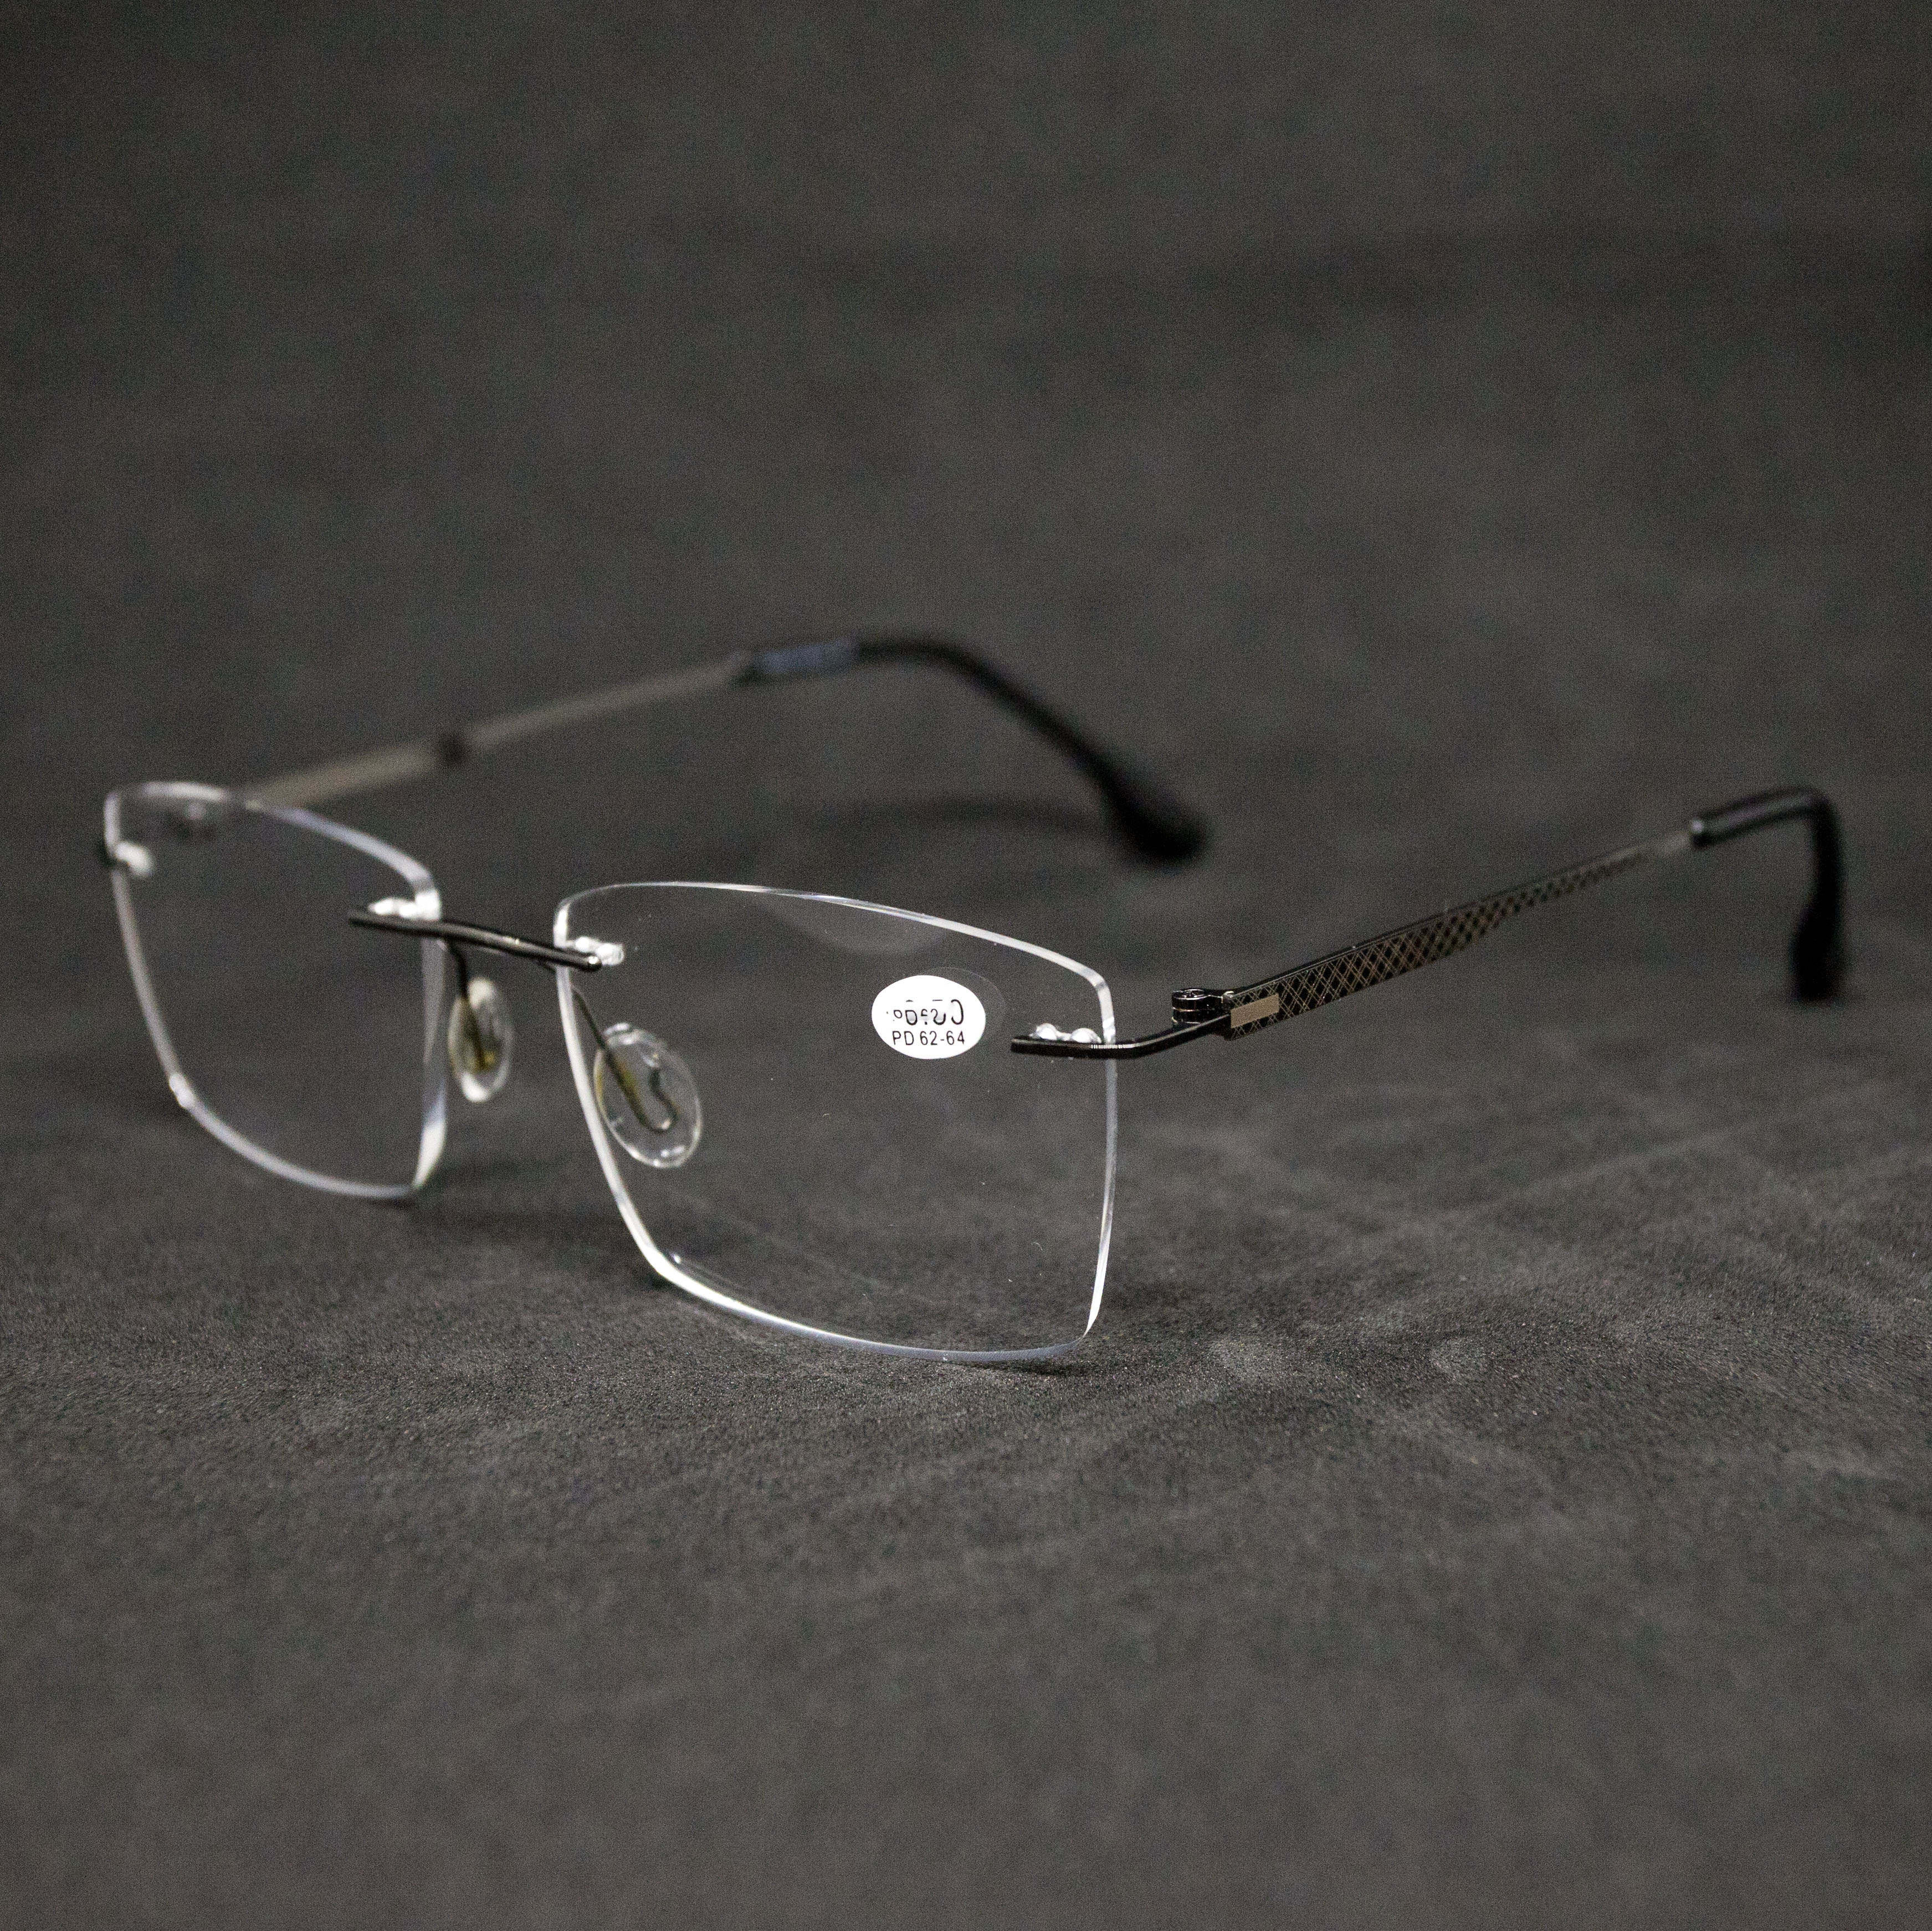 Безободковые очки для зрения Fabia Monti 1087 -1.25, без футляра, серые, РЦ 62-64